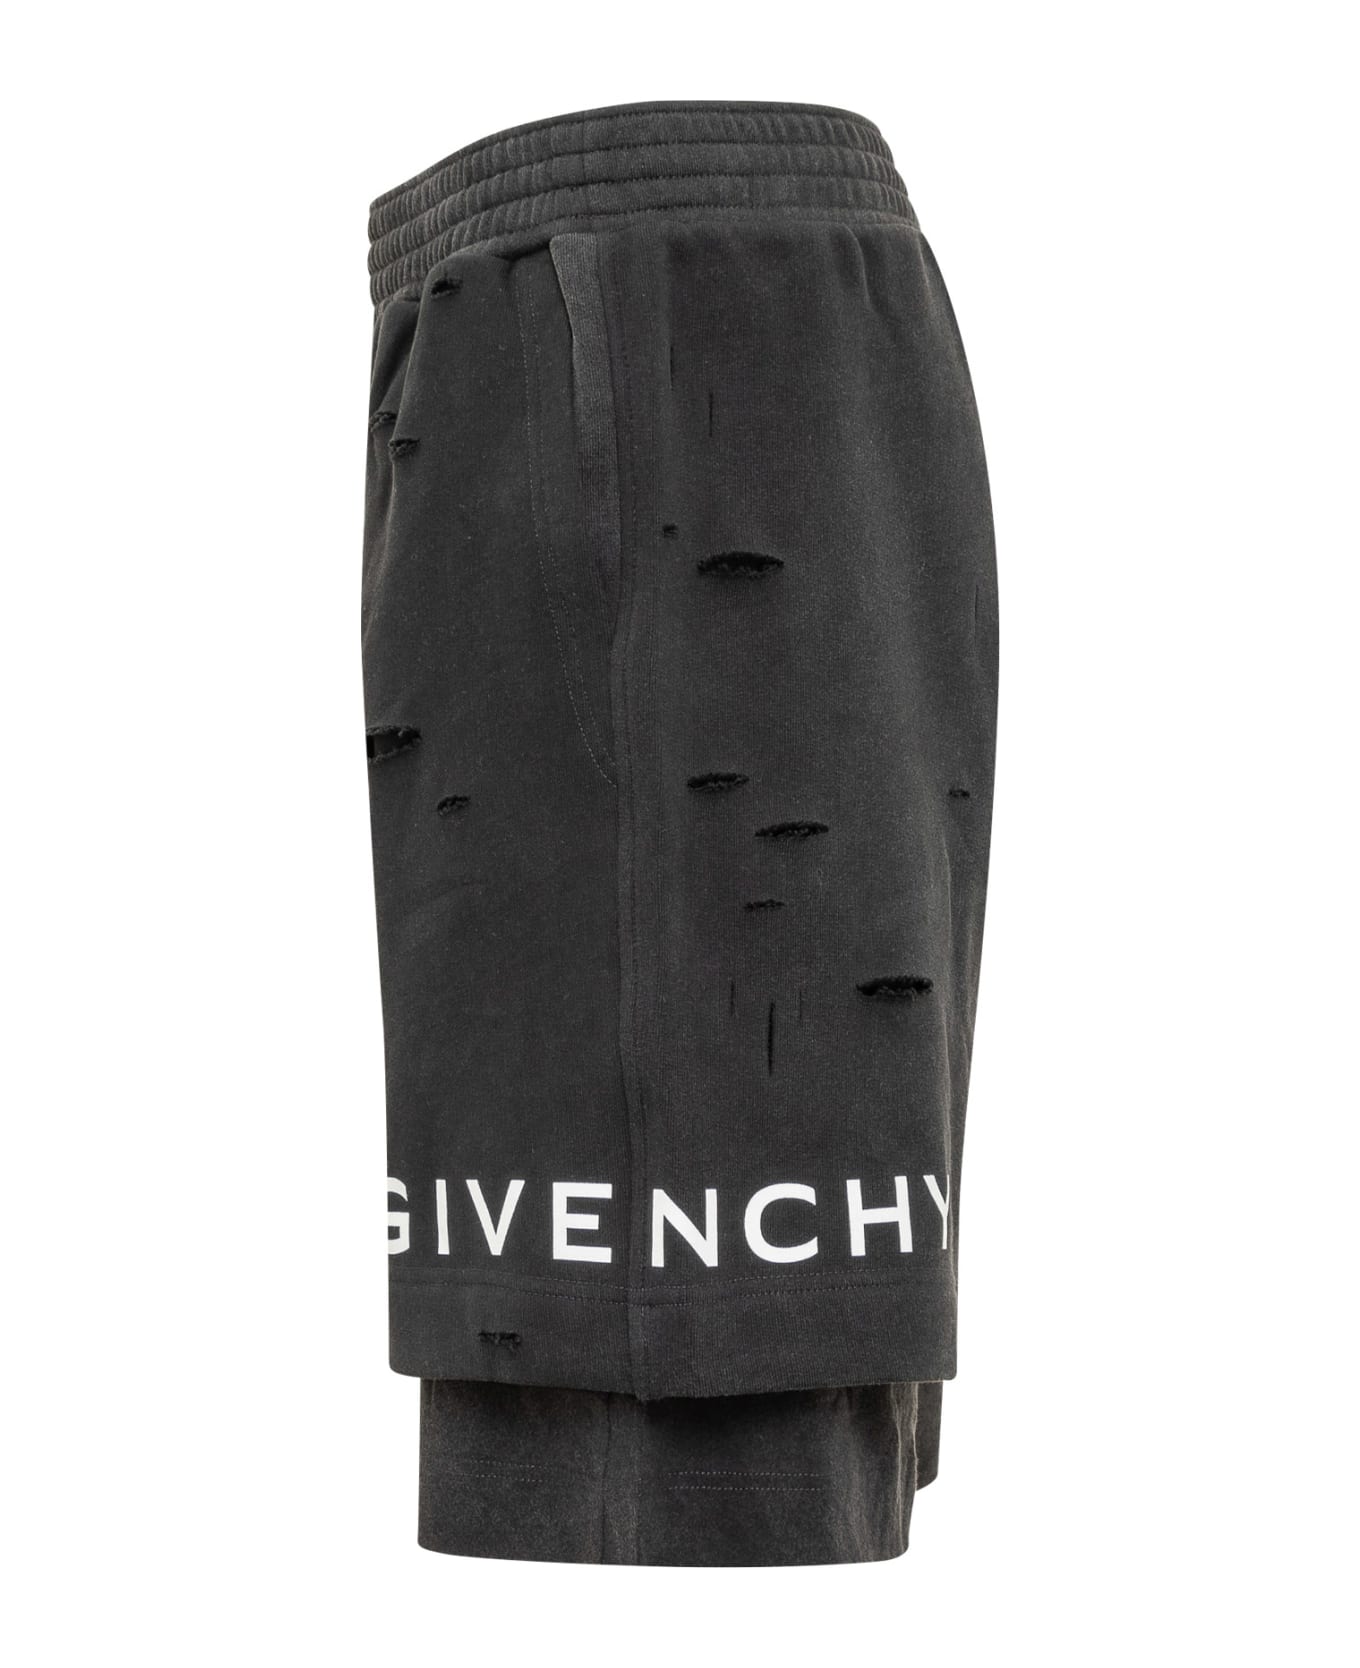 Givenchy bolsas Archetype Shorts - FADED BLACK